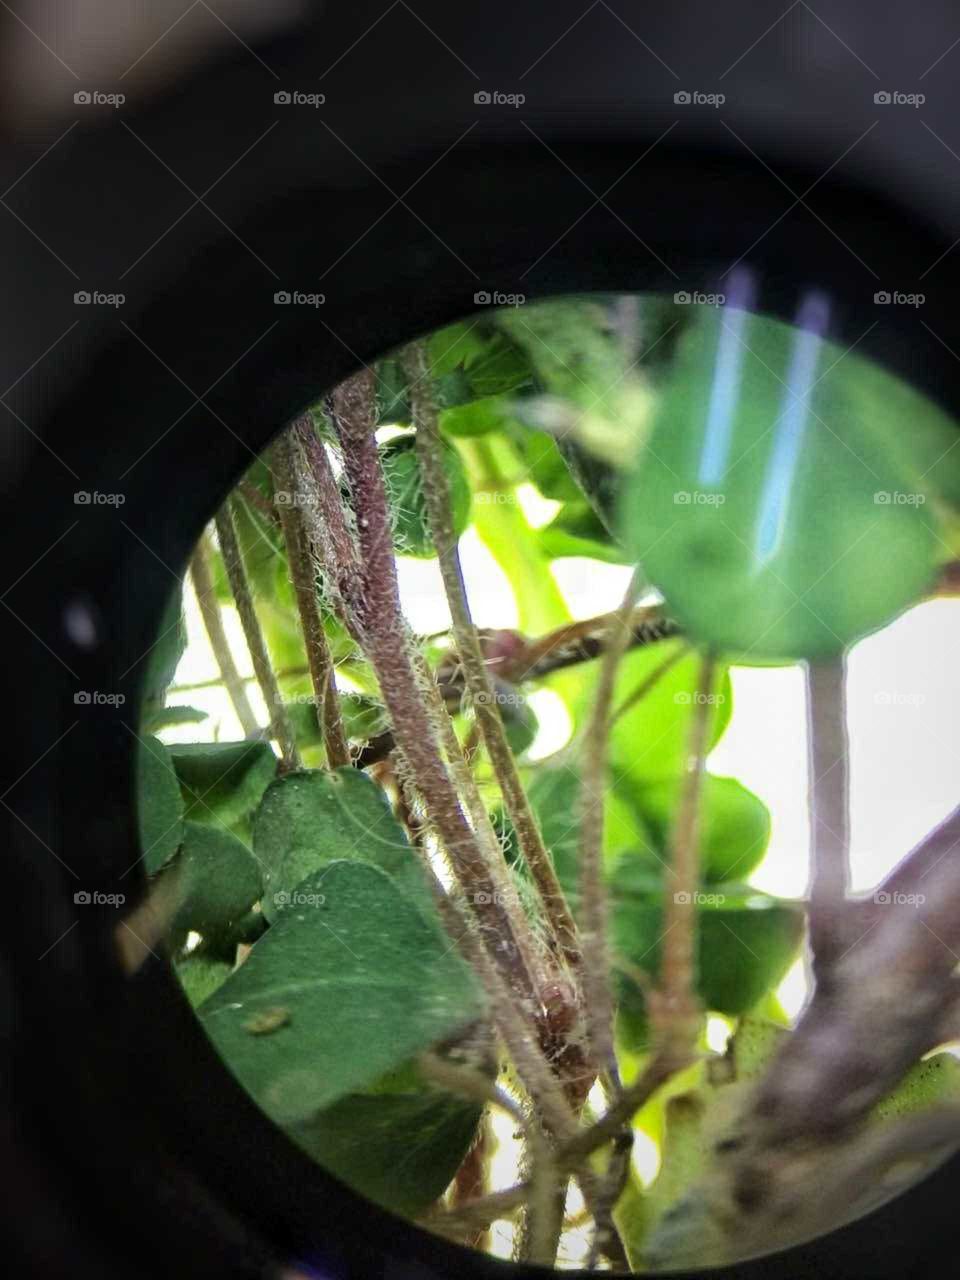 Aqui se muestra una foto de hierbas en un microscopio macrometrico. Esta foto fue tomada con un celular Motorola G4 play y retocada con el mismo